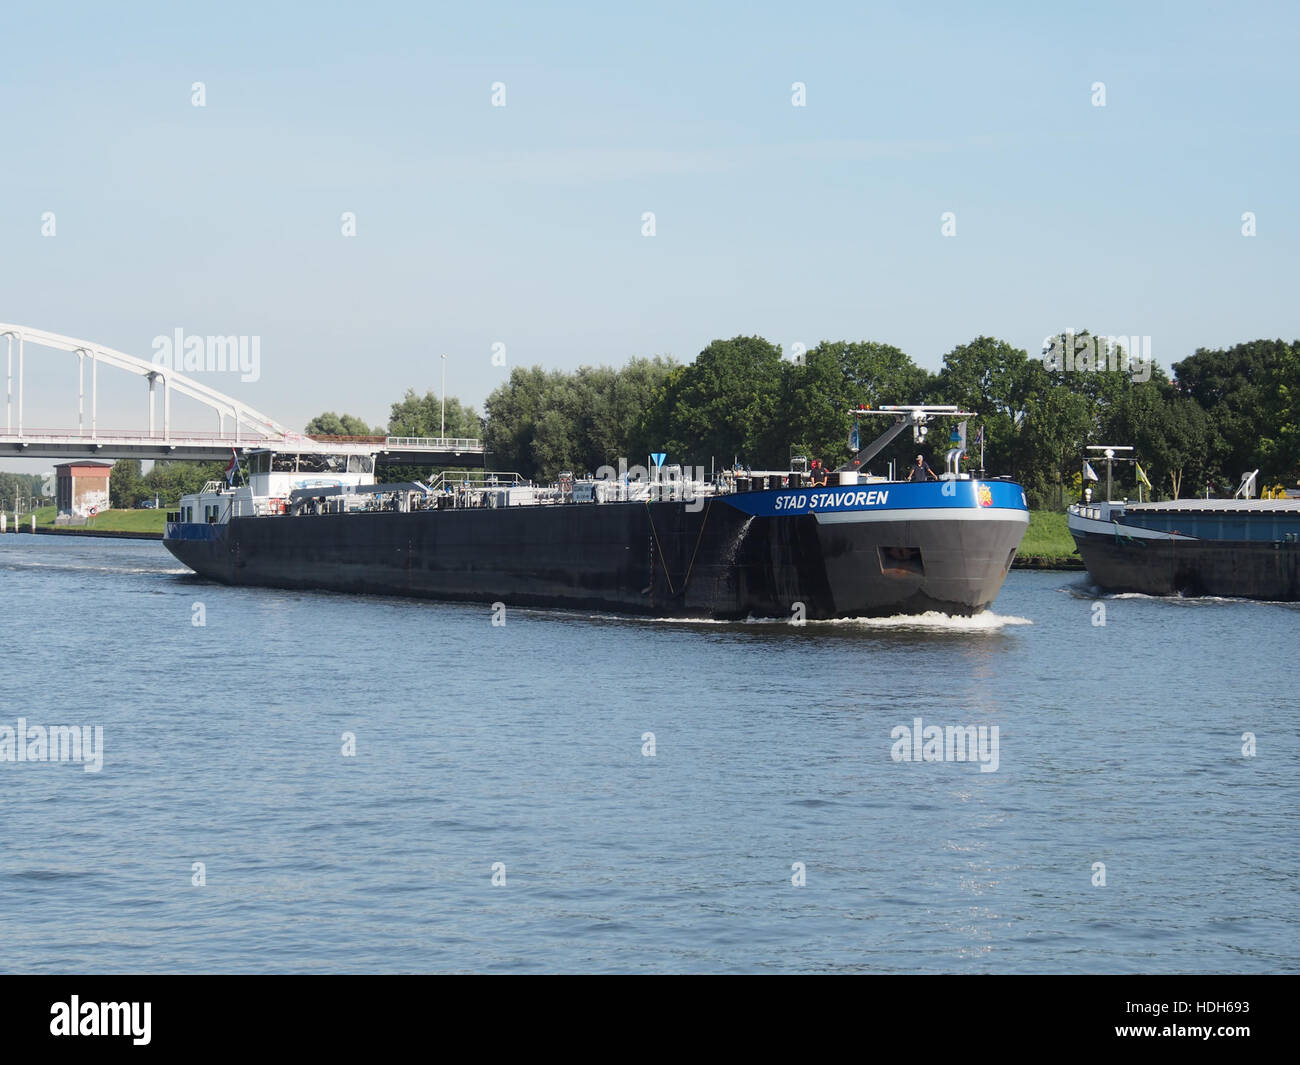 Stad Stavoren (Schiff, 1989) Op Het Amsterdam-Rijn kanaal pic1 Stockfoto